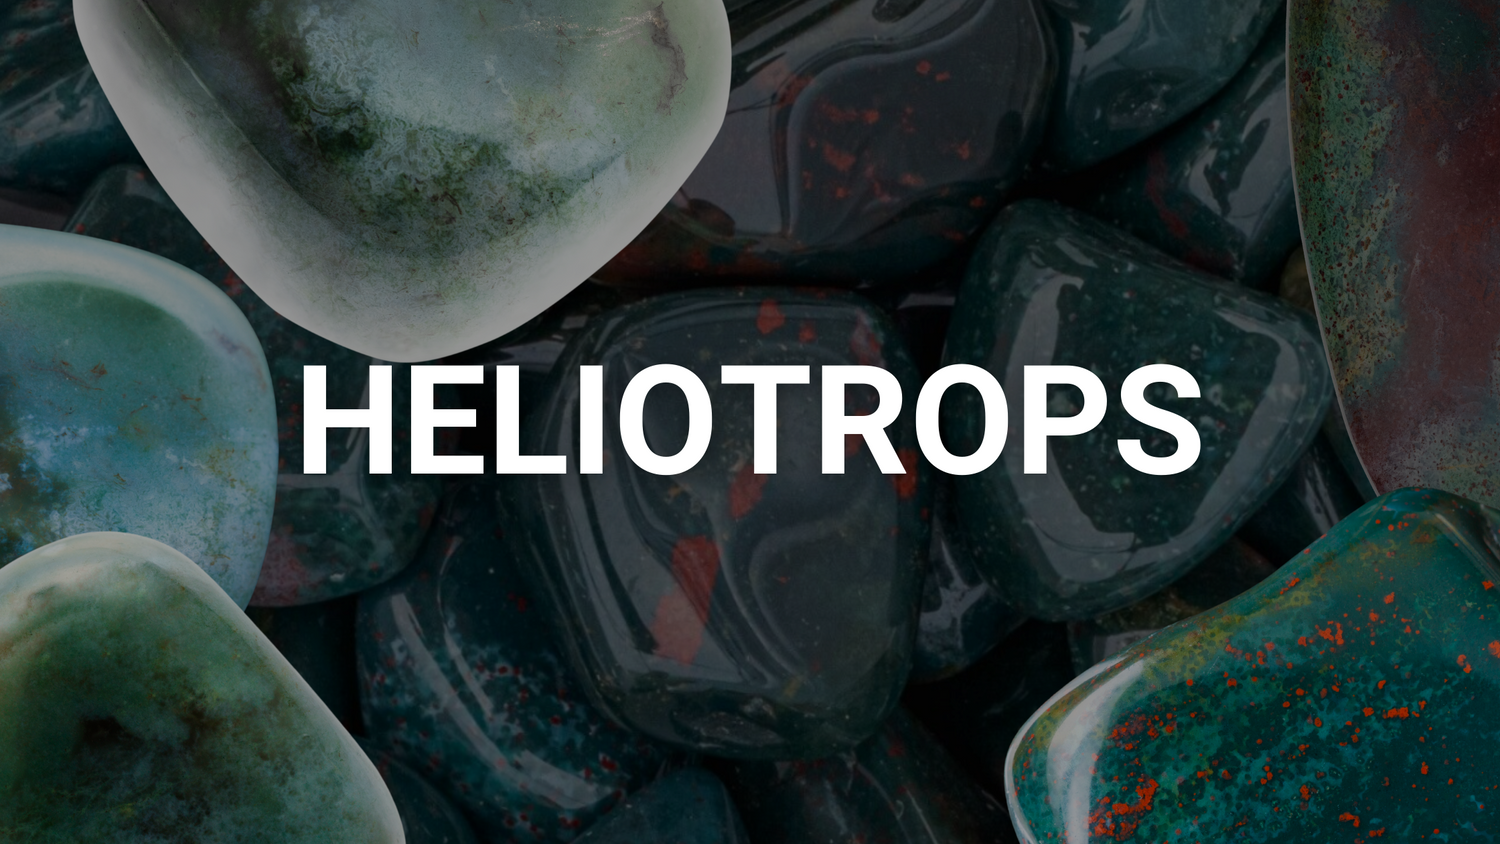 Heliotrops